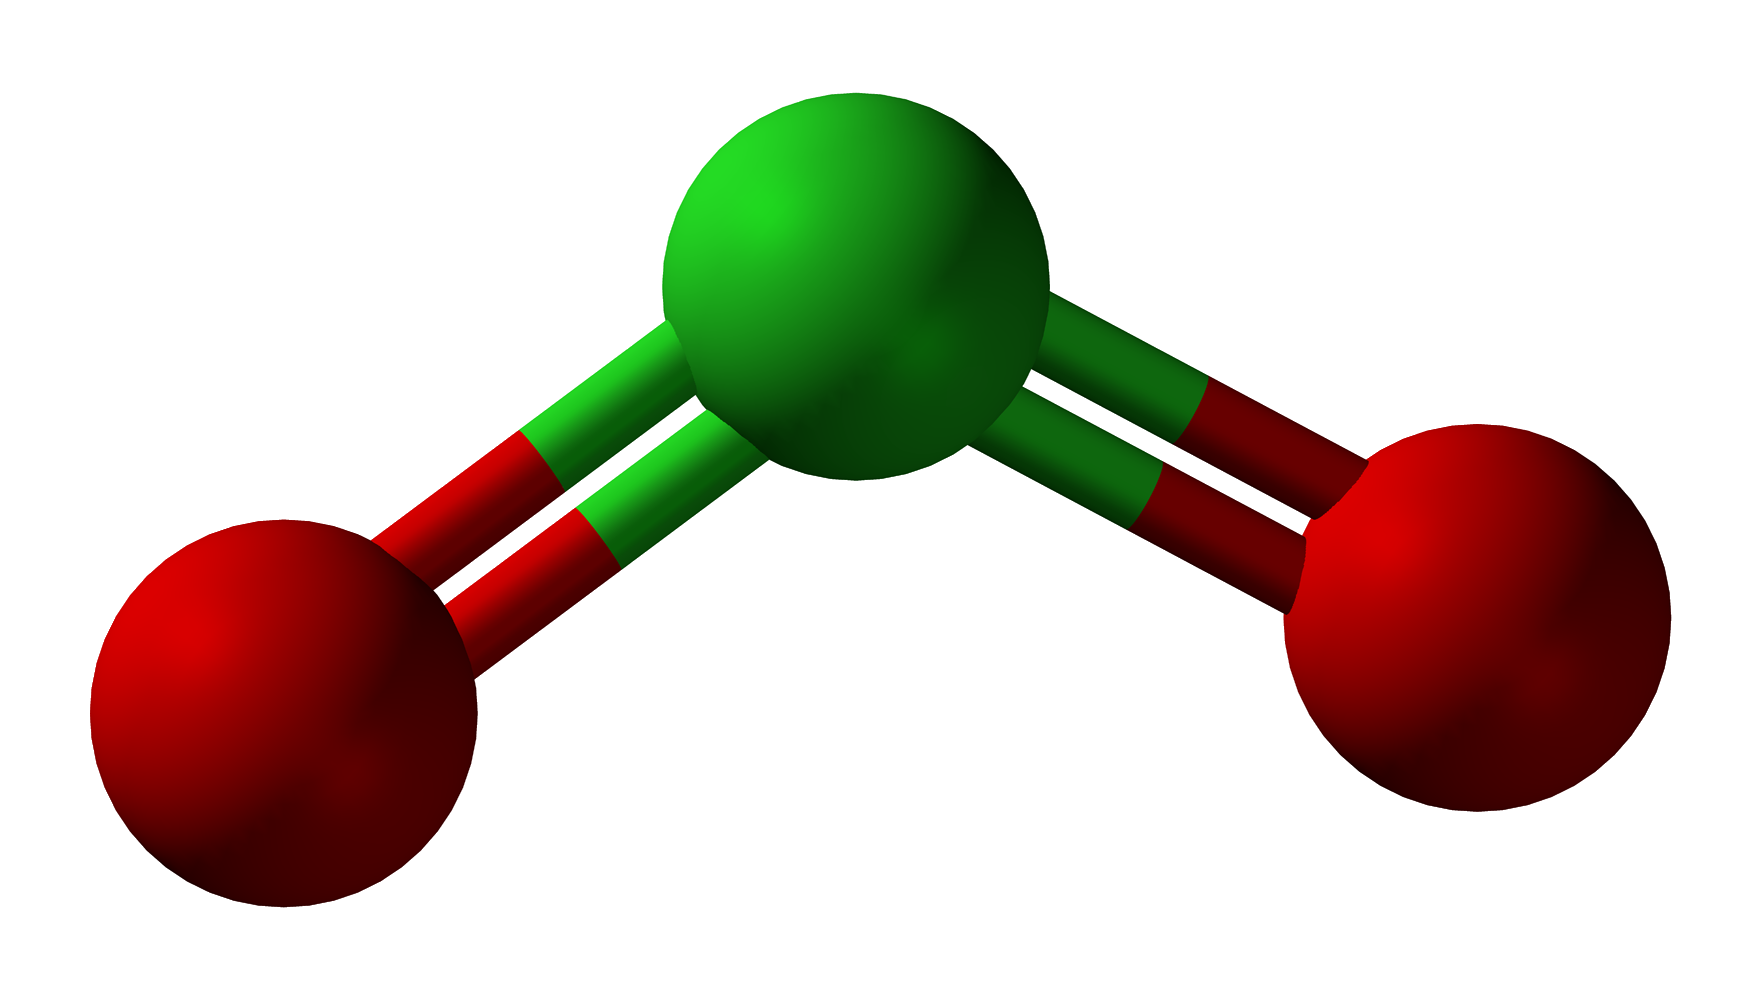 So4 газ. Диоксид серы (so2). Модель молекулы сернистого газаso2. Модель молекулы оксида серы 4. Диоксид серы so2 (сернистый ангидрид).